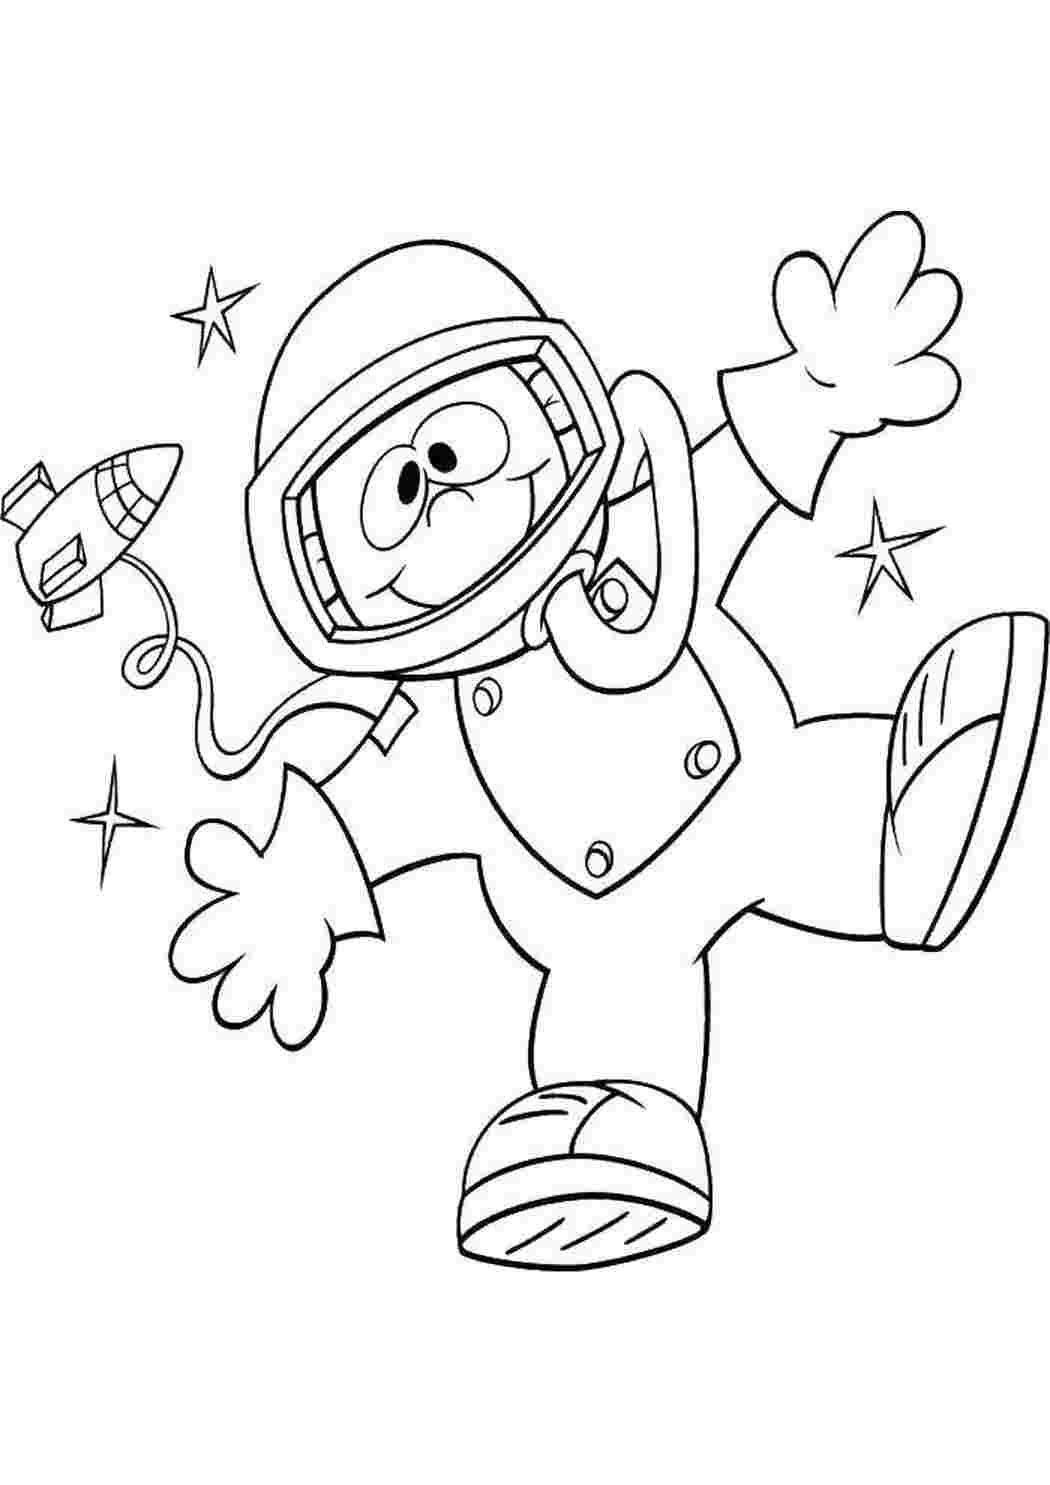 День космонавтики шаблоны для вырезания. Космонавт раскраска для детей. Раскраска день космонавтики для детей. Космонавтика раскраски для детей. Космос раскраска для детей.